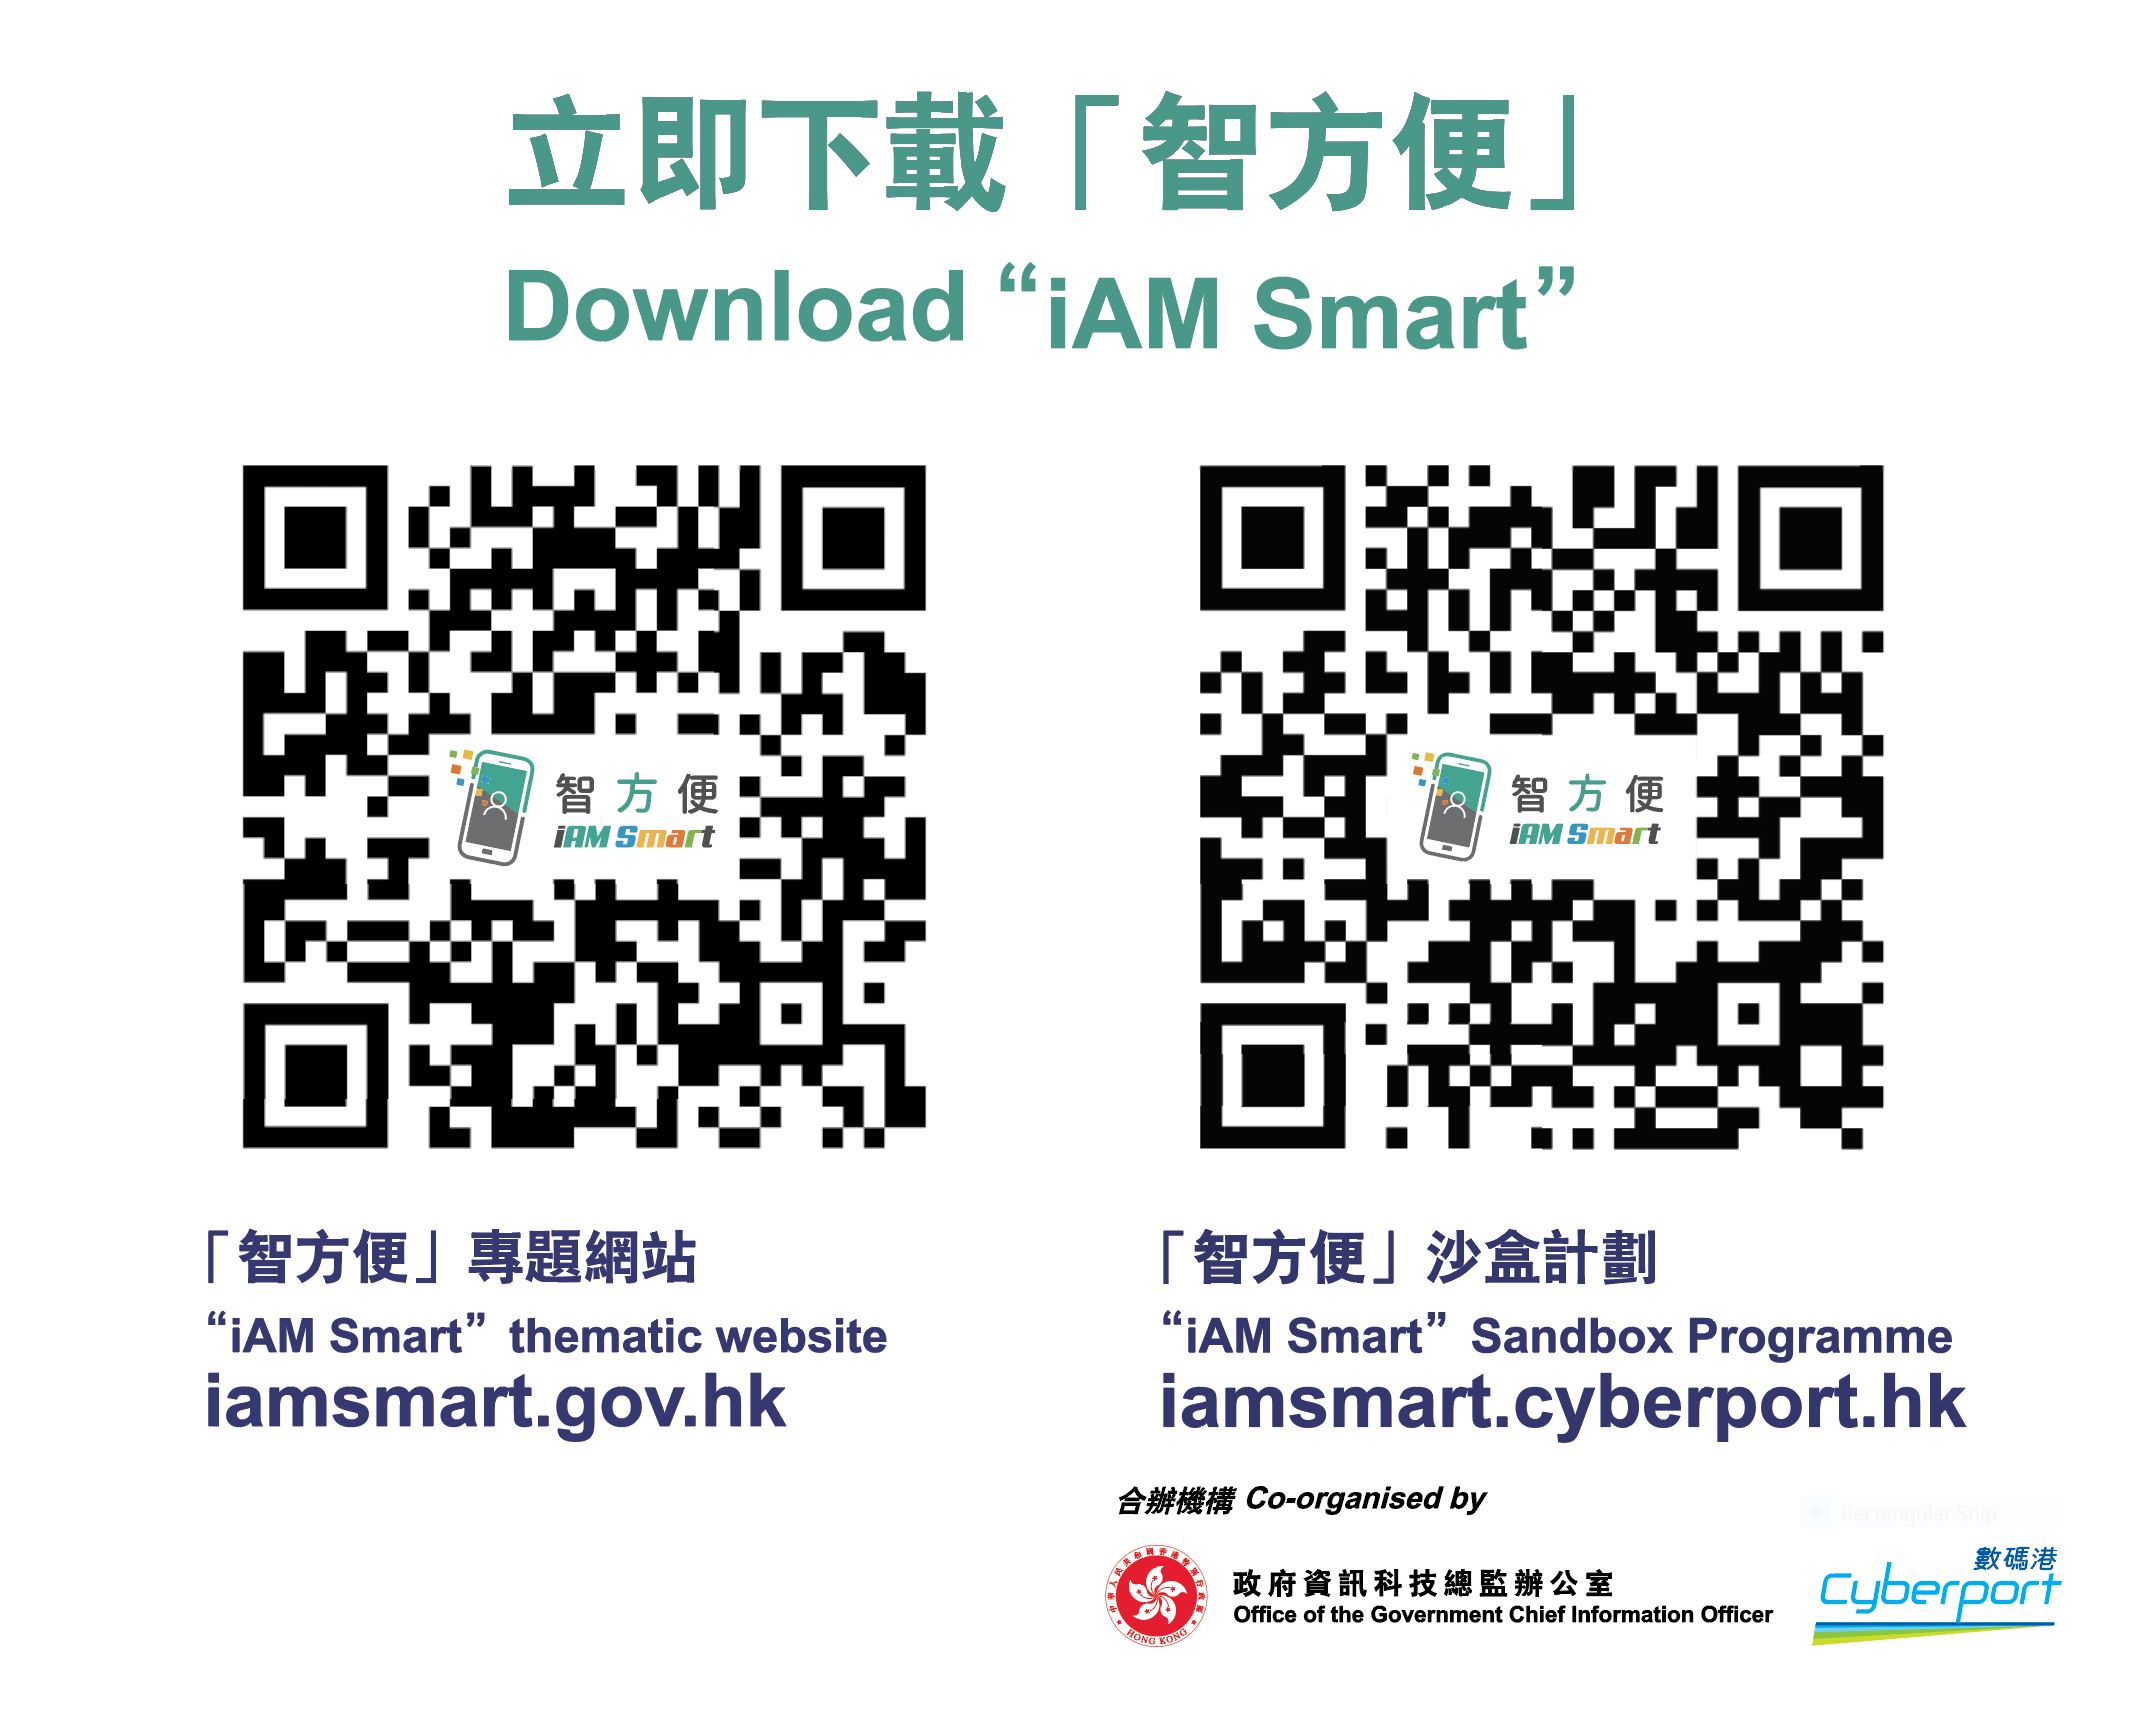 立即下載智方便 “智方便” 專題網站 Iamsmart.gov.hk , “智方便”沙盒計劃 Iamsmart.cyberport.hk